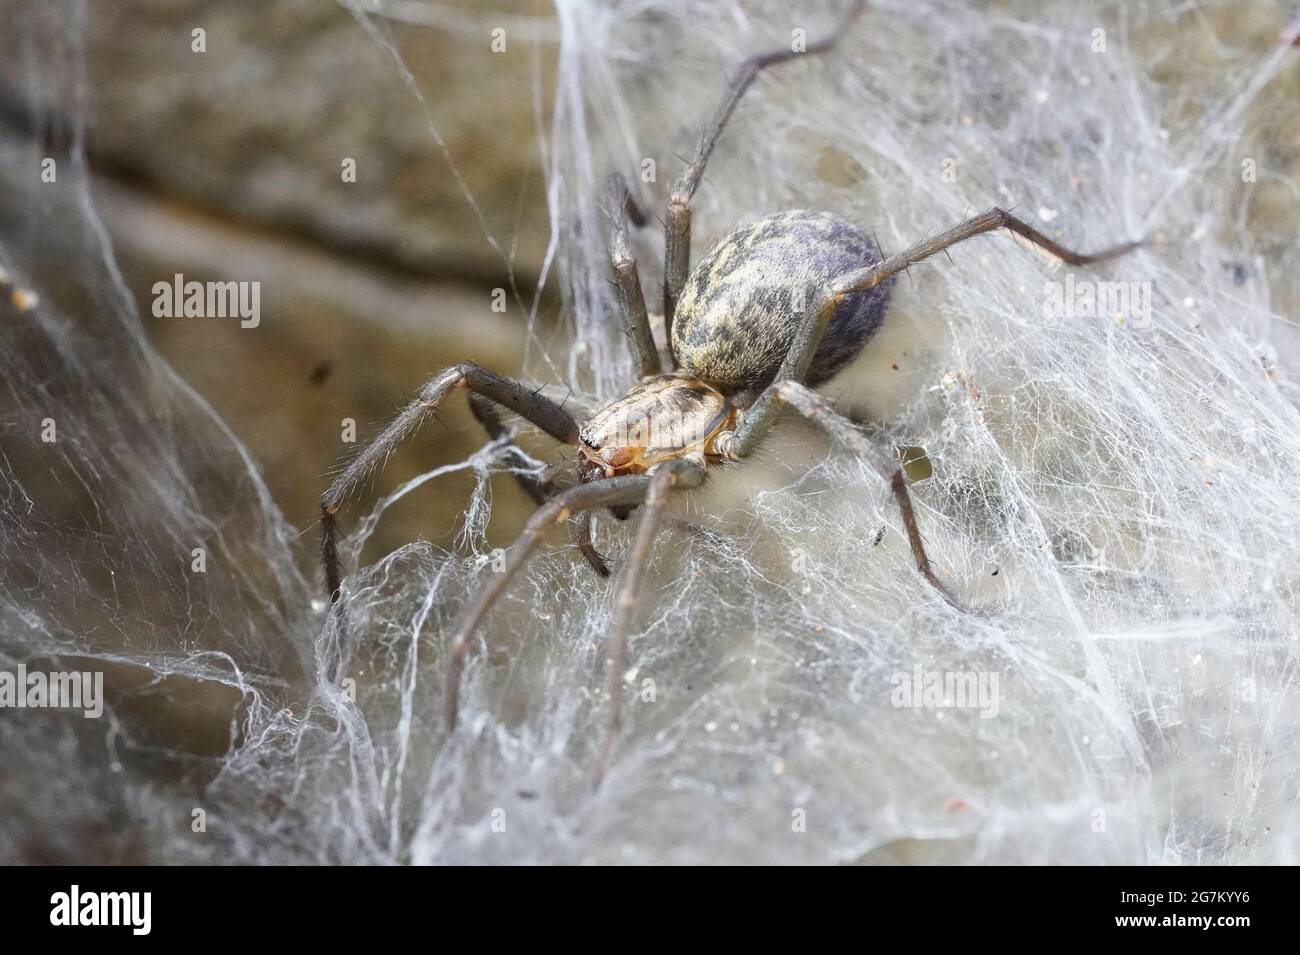 Barn funnel weaver close up on its cobweb. Tegenaria domestica. Common european house spider. Stock Photo